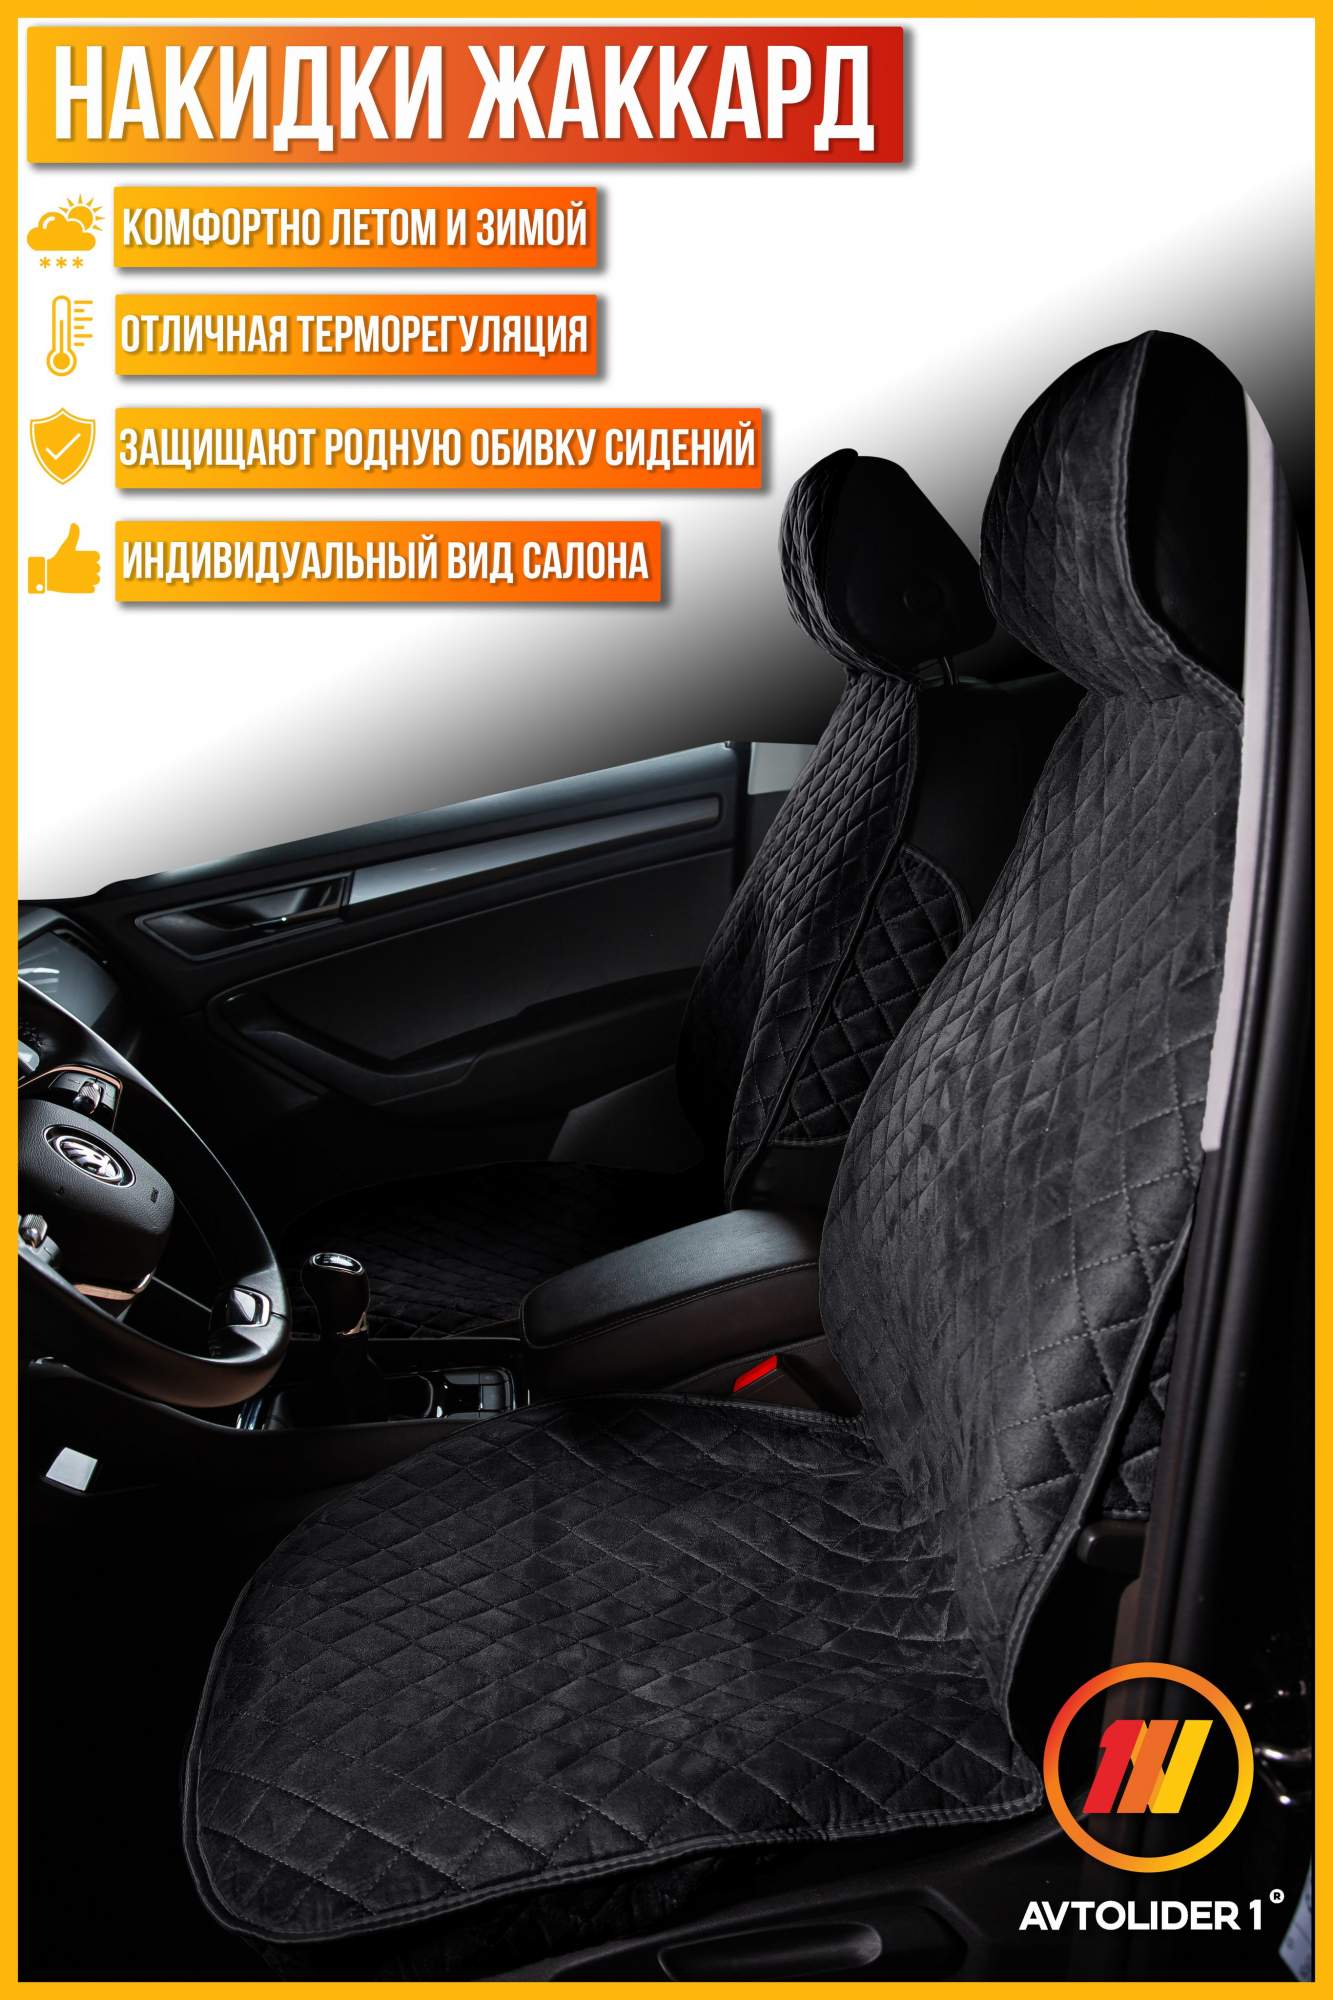 

Накидка на сиденье AVTOLIDER1 "Жаккард" 2шт. Чёрная с черной нитью для Hyundai Getz 1, Черный, HY15-0101-0000777447-589